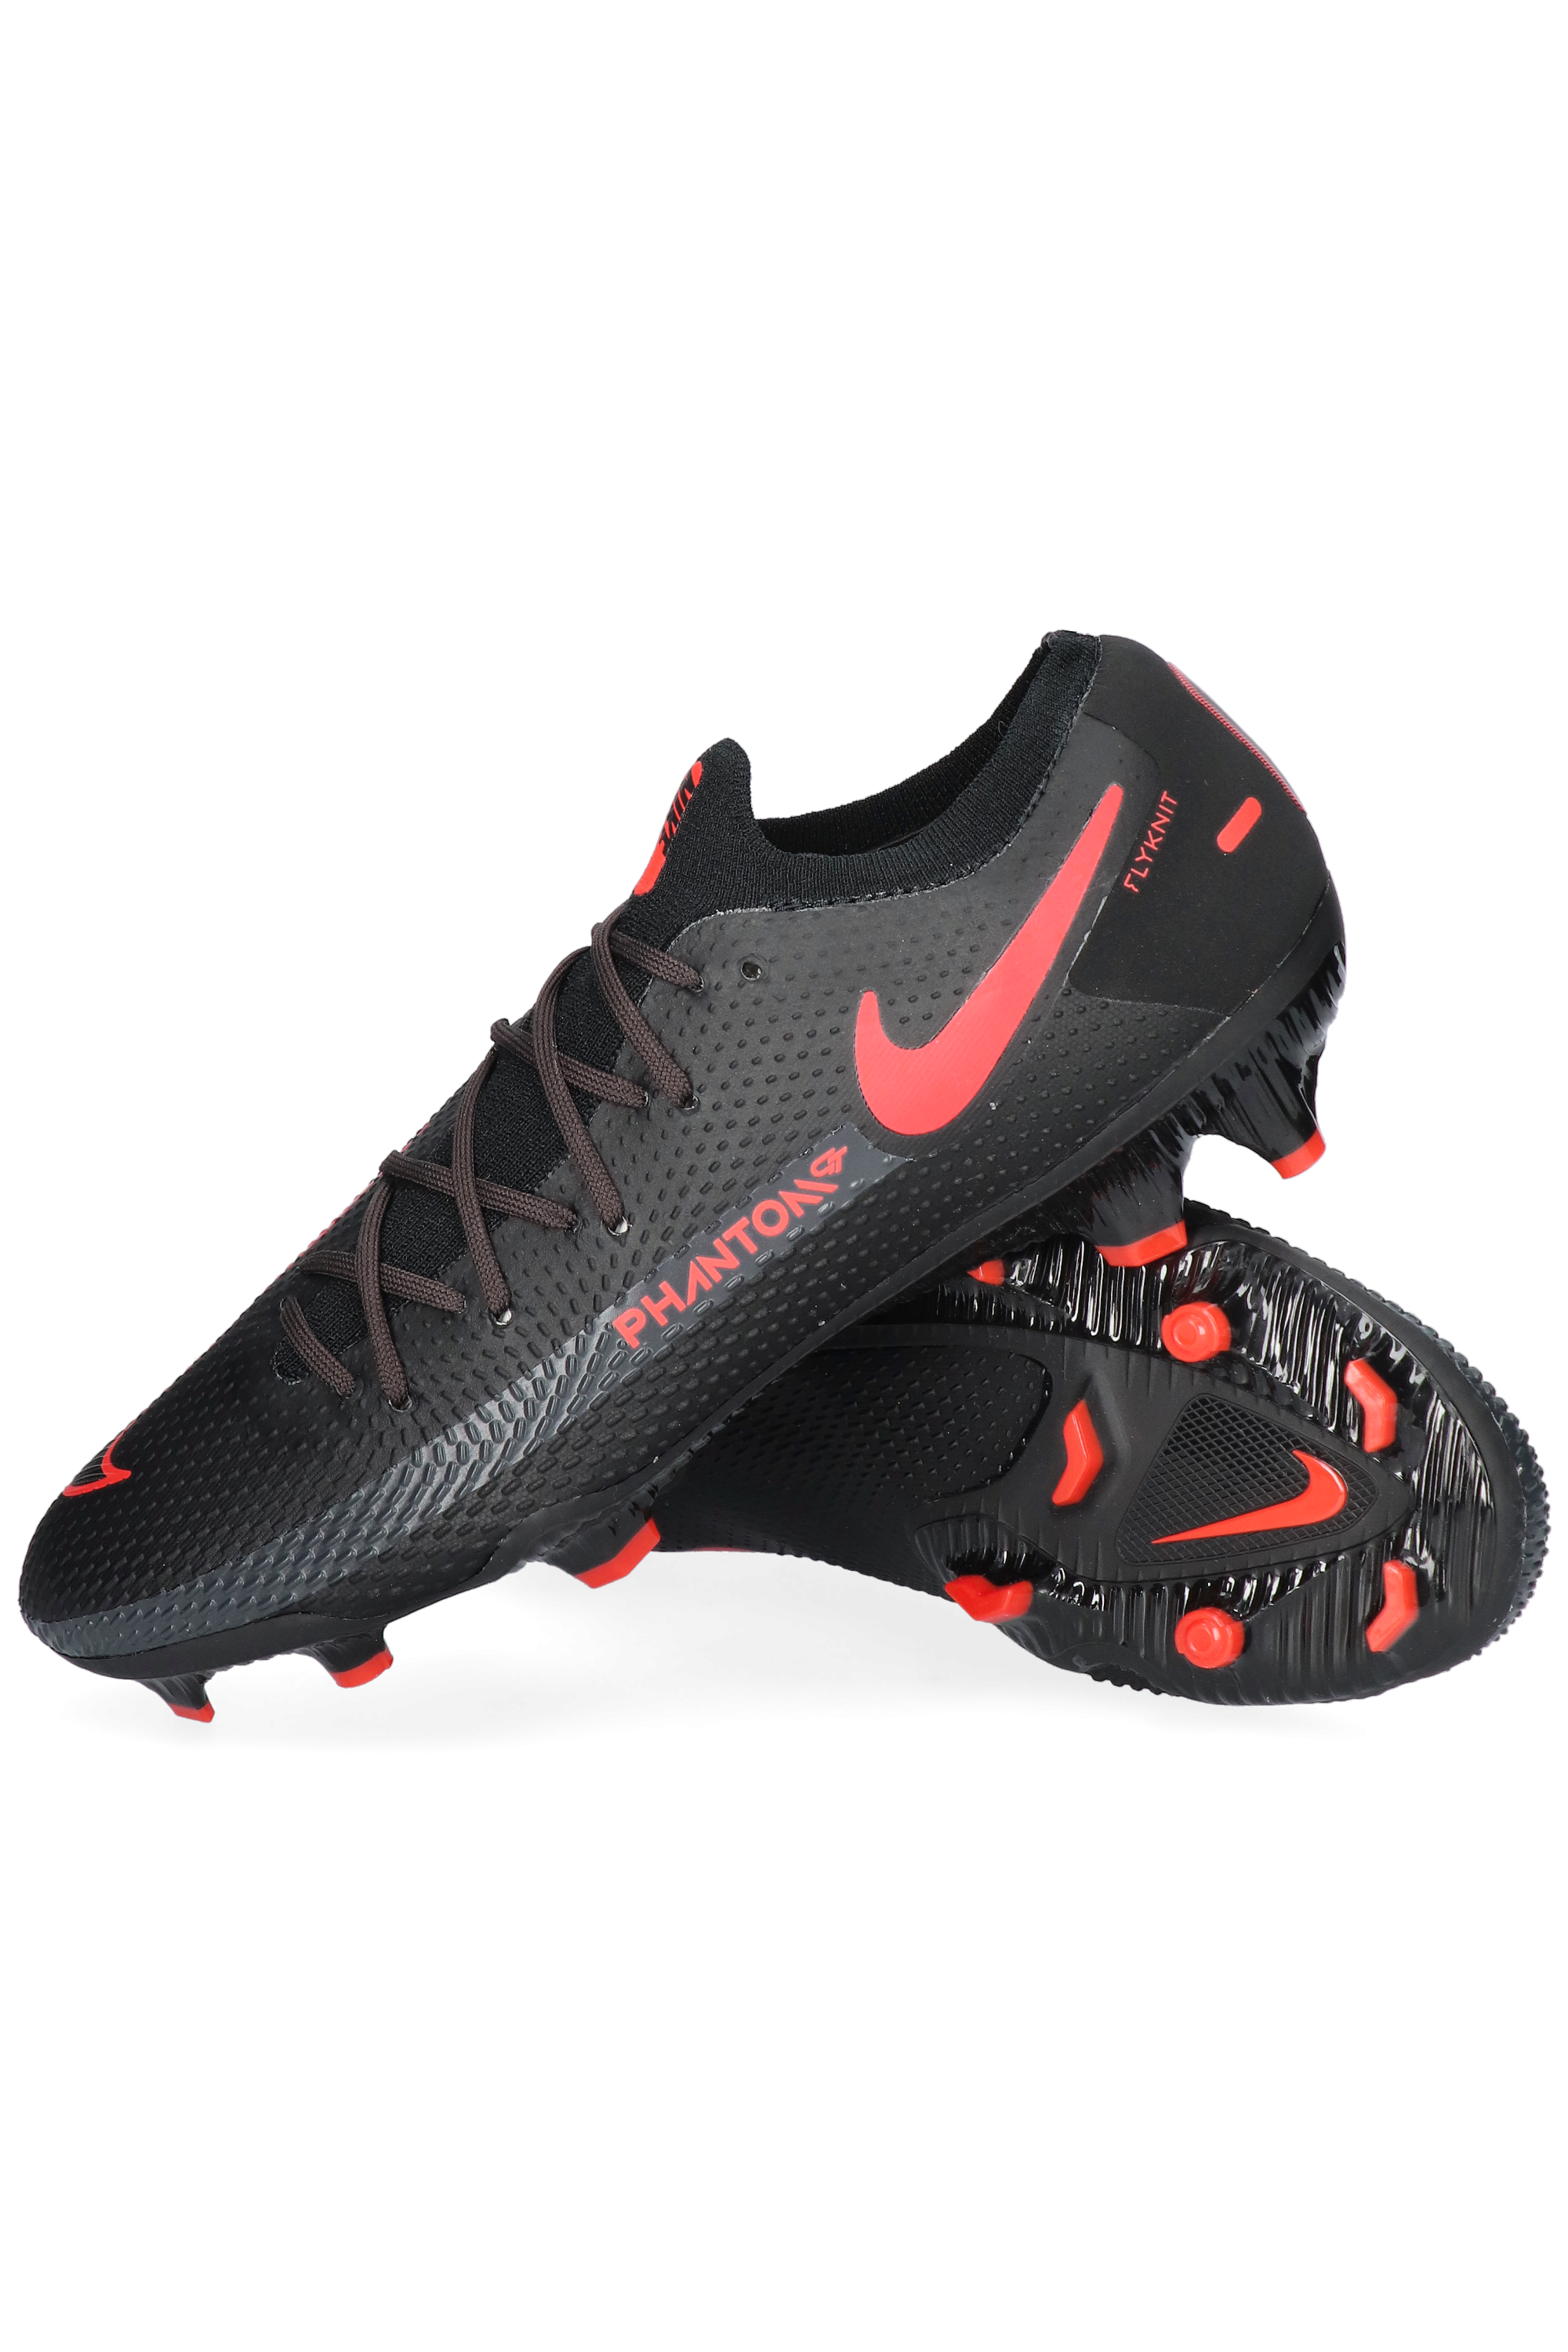 Nike Phantom GT PRO FG | R-GOL.com - Football boots \u0026 equipment